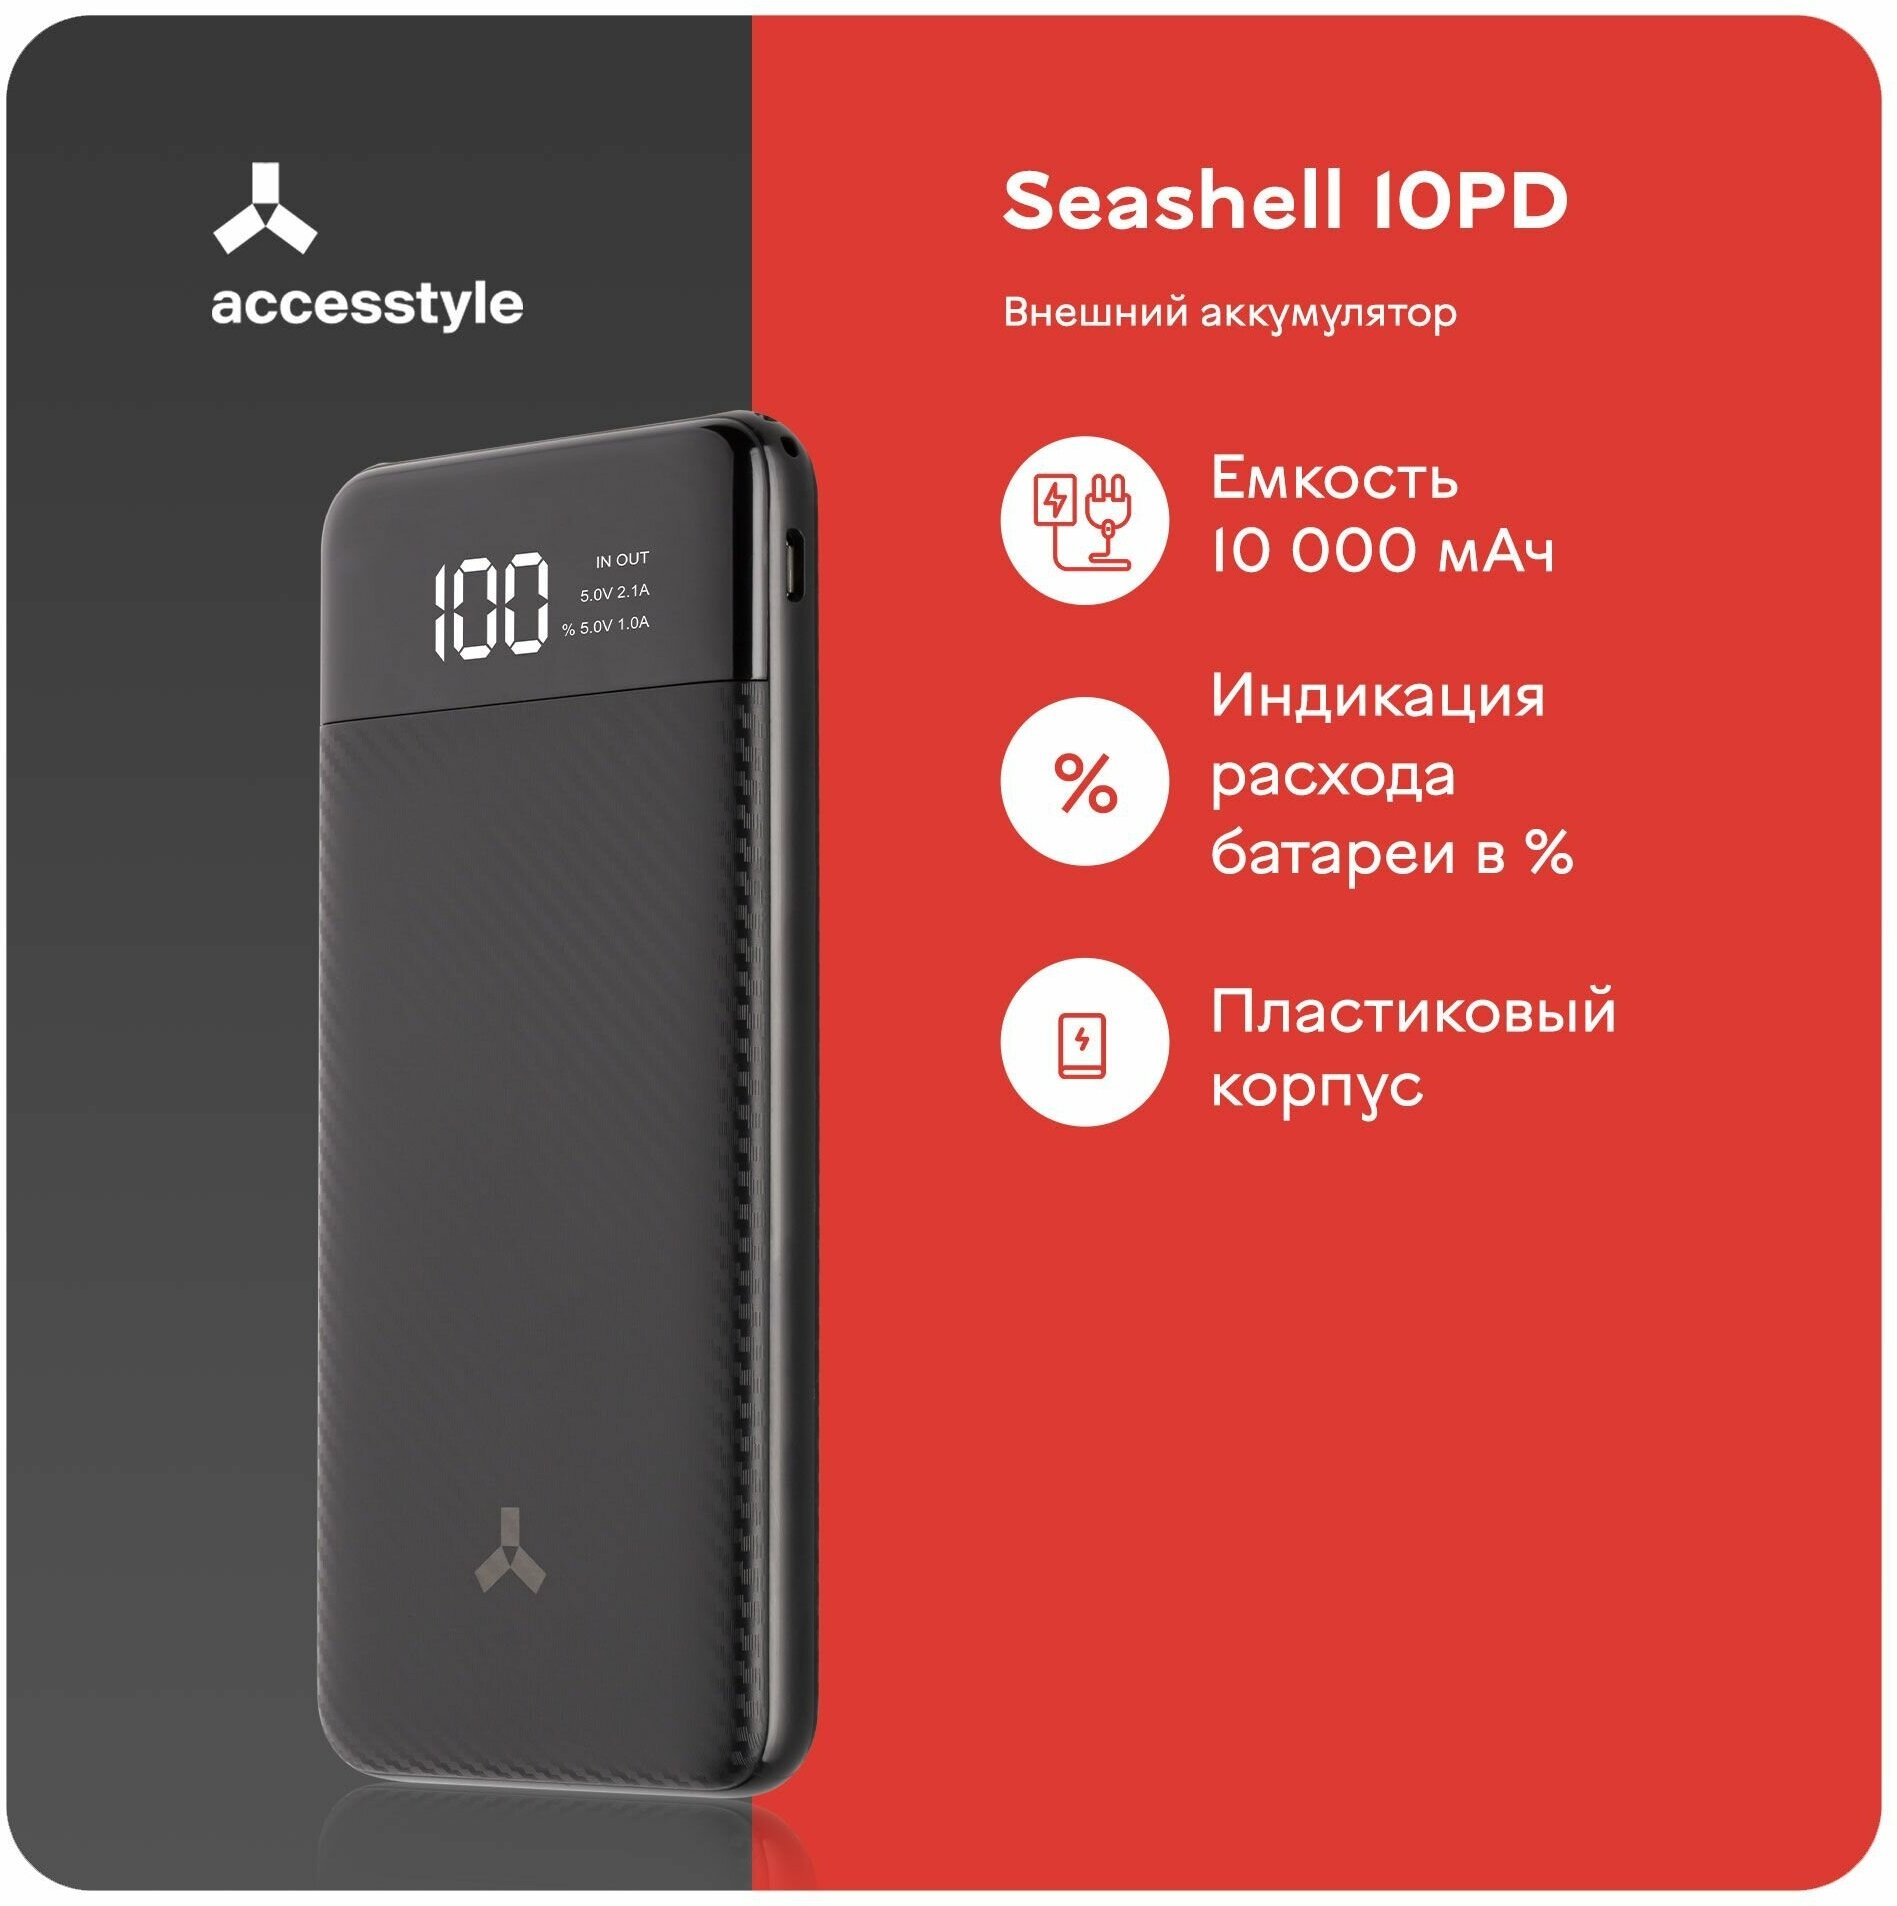 Внешний аккумулятор Accesstyle Seashell 10PD 10000 mAh Чёрный